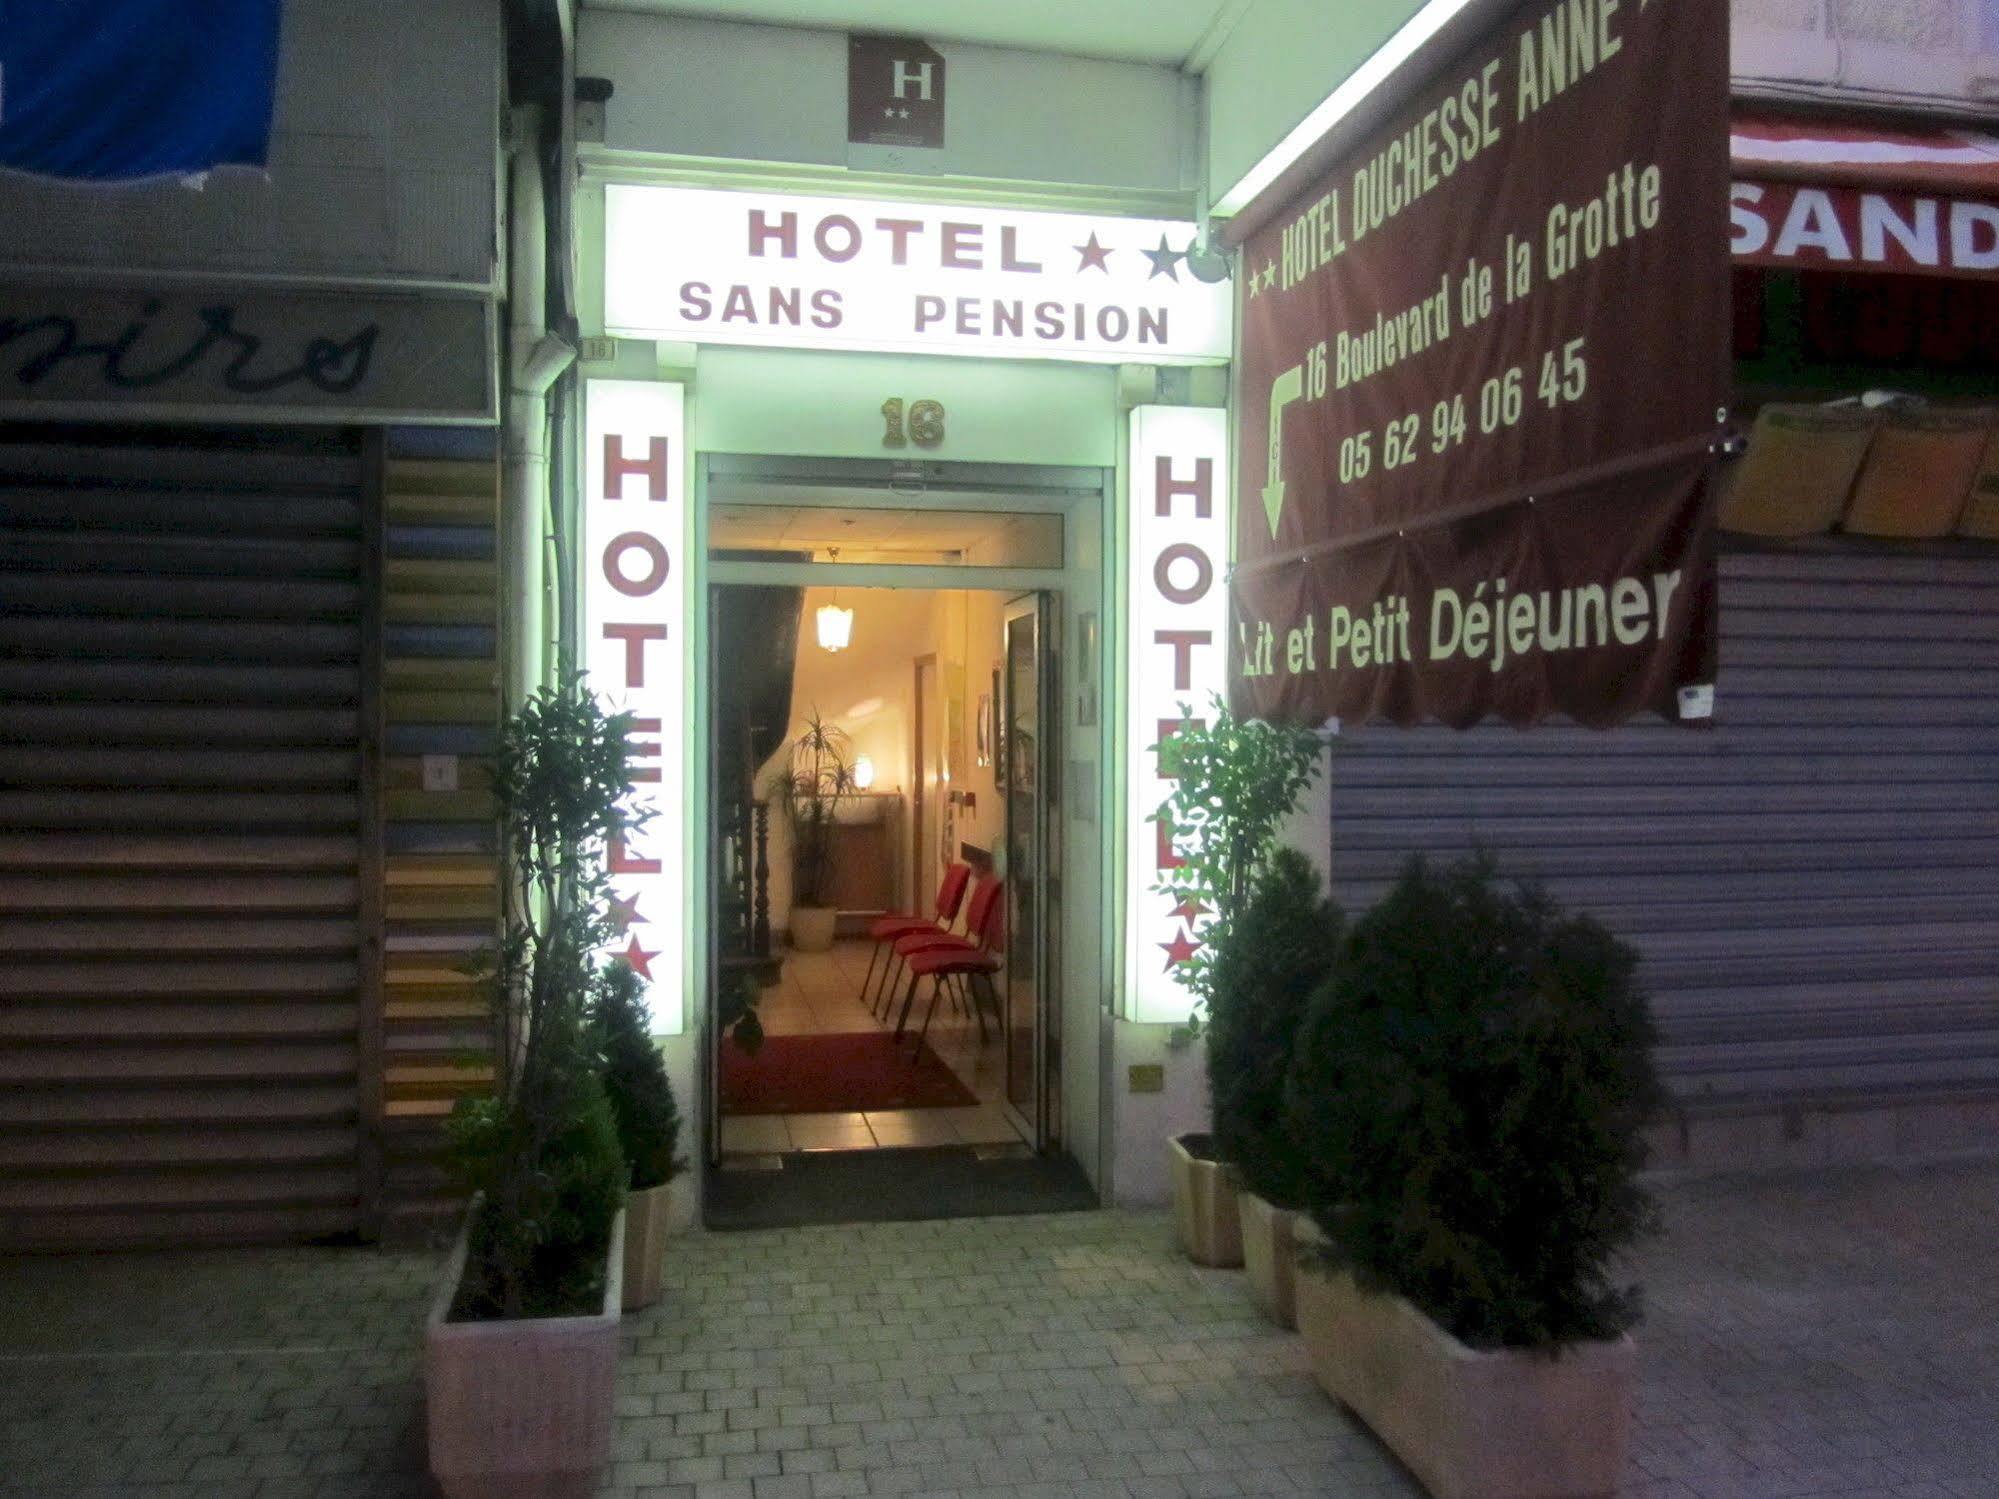 Hotel Duchesse Anne Lourdes Exterior foto